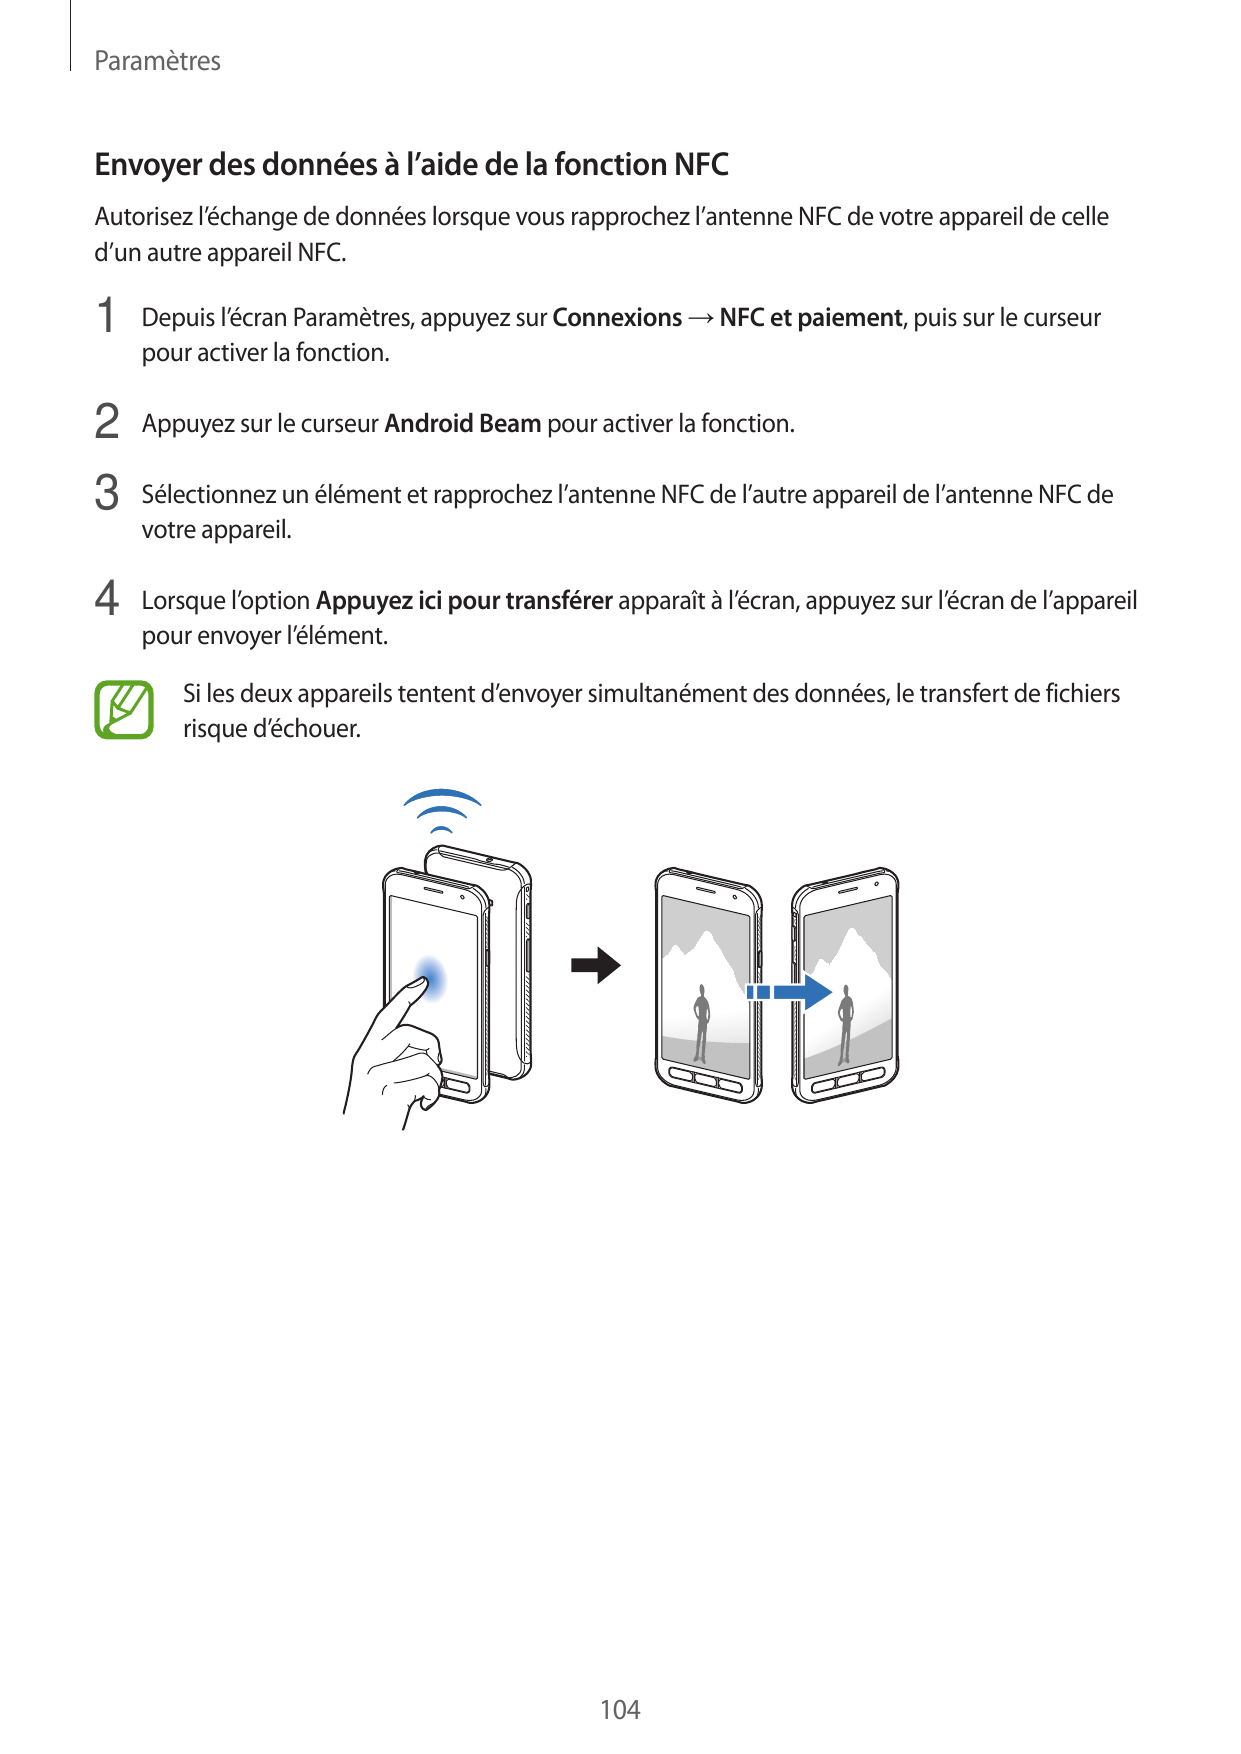 ParamètresEnvoyer des données à l’aide de la fonction NFCAutorisez l’échange de données lorsque vous rapprochez l’antenne NFC de